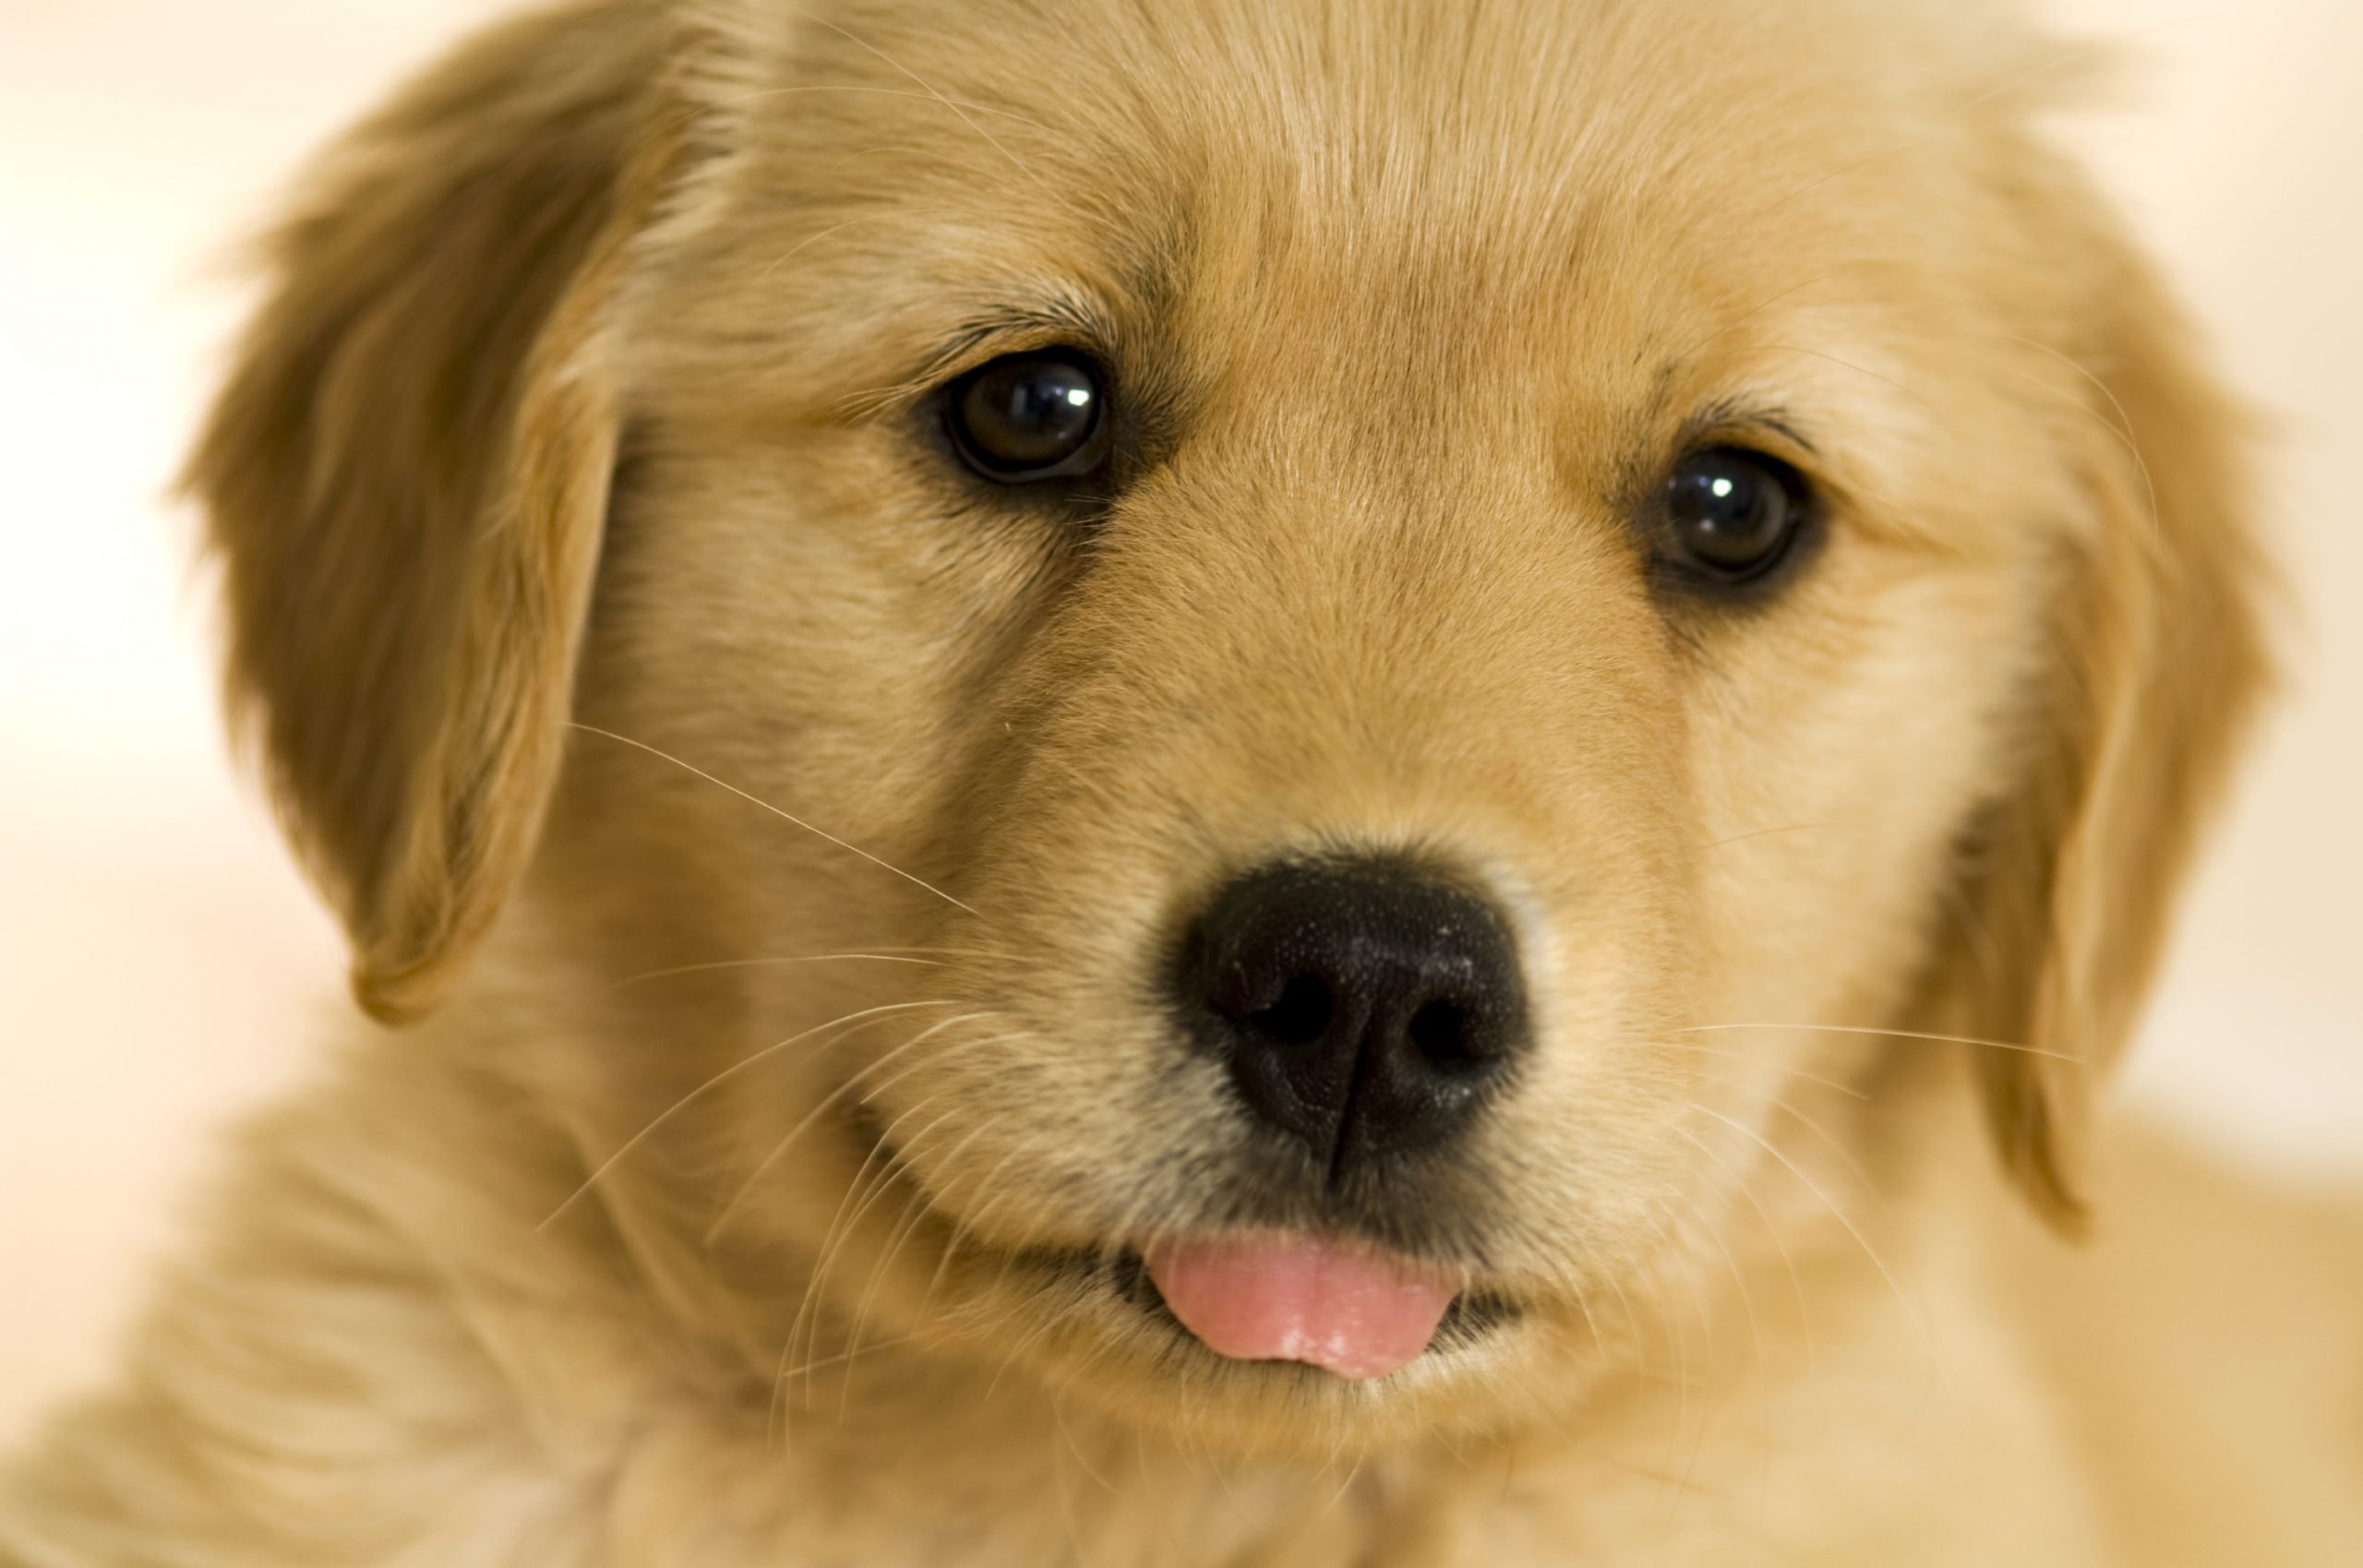 [49+] Cute Golden Retriever Puppies Wallpaper on ...